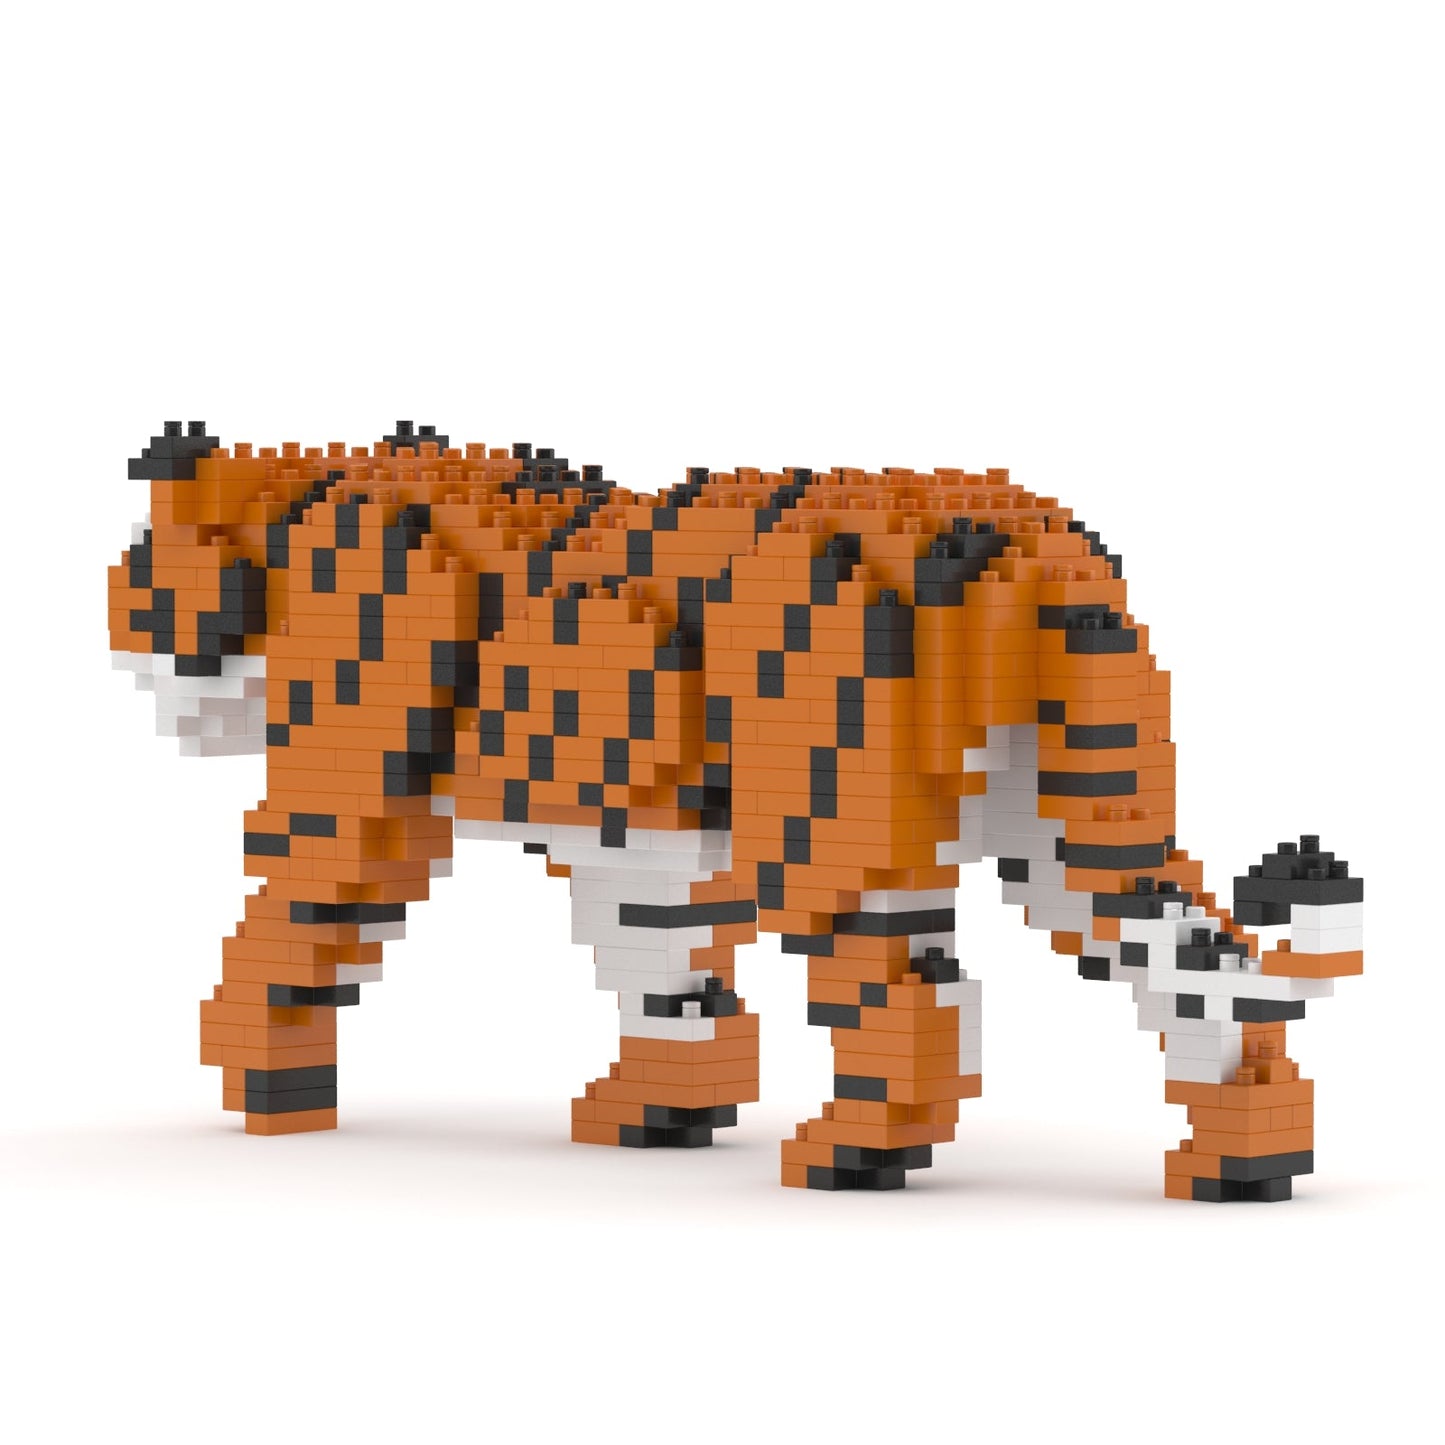 Tiger 01